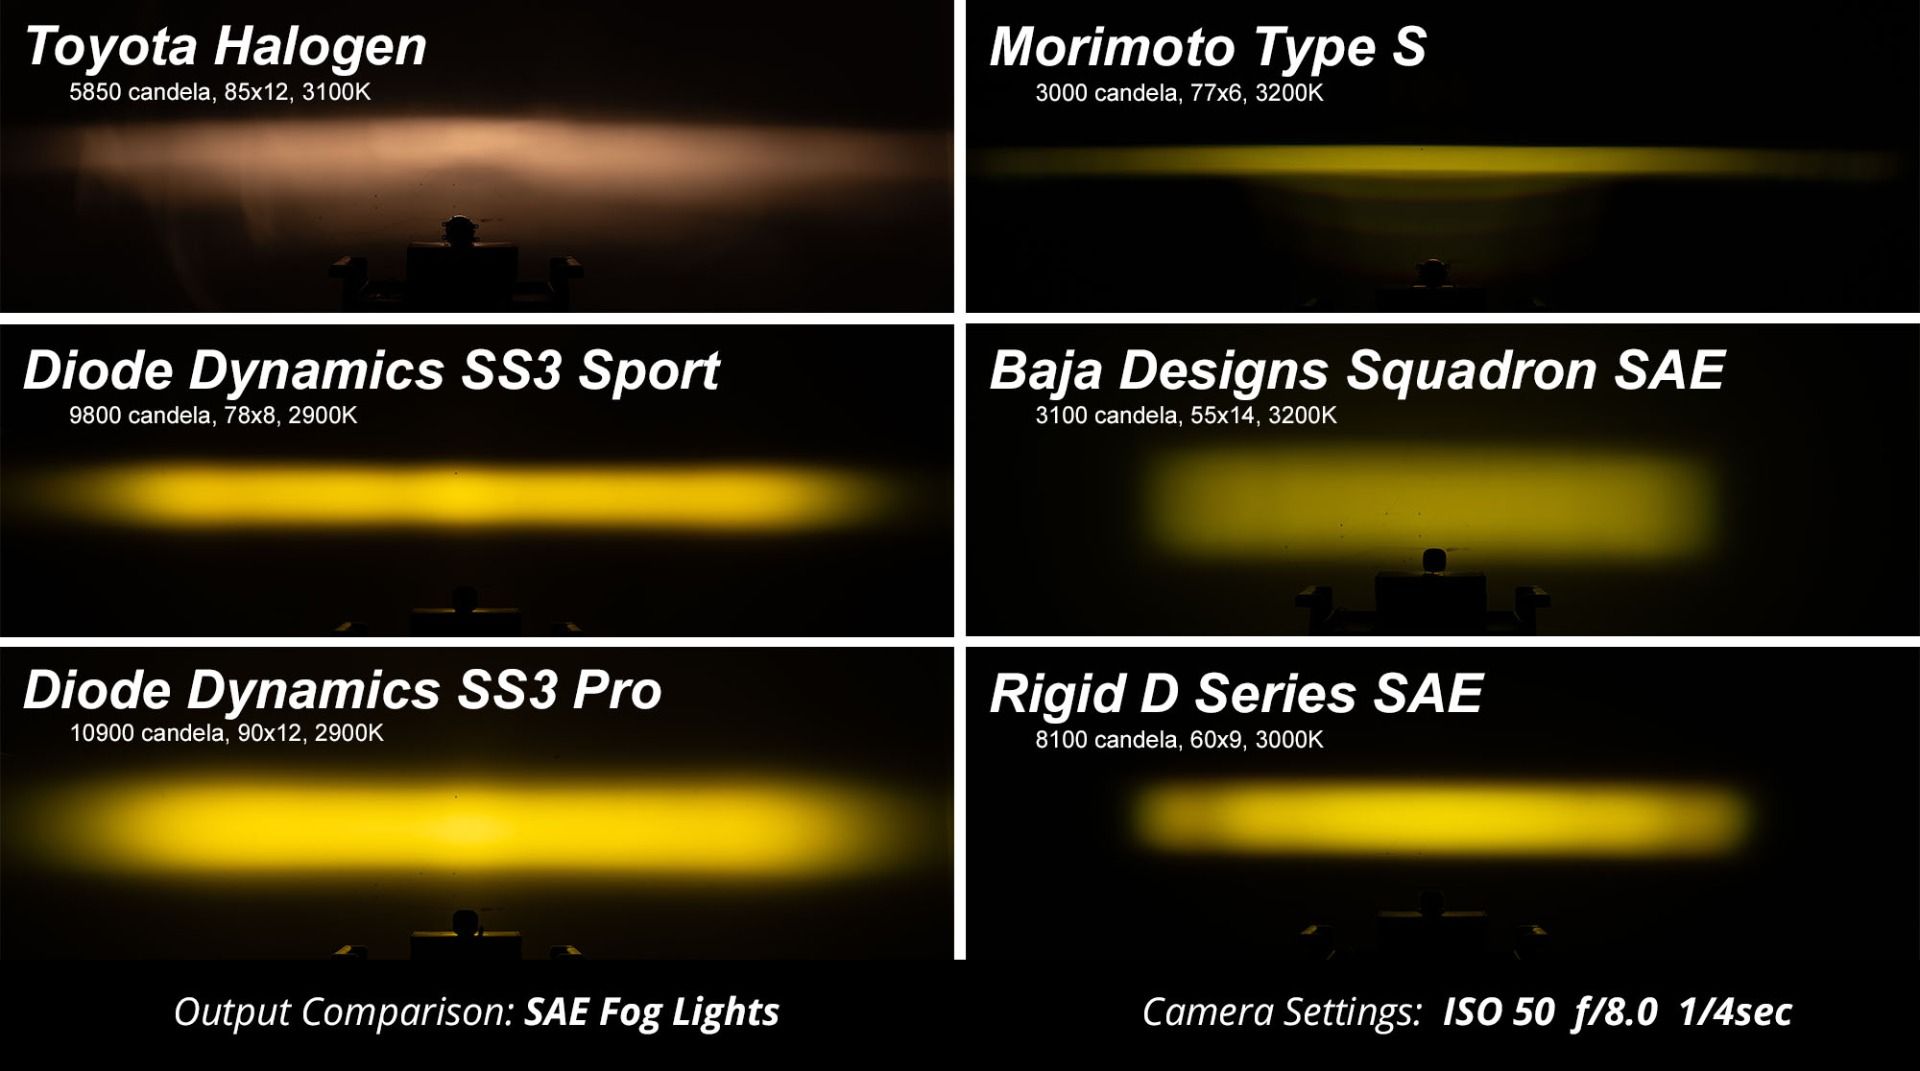 SS3 LED Fog Light Kit for 2014-2019 Ford Fiesta ST Diode Dynamics-